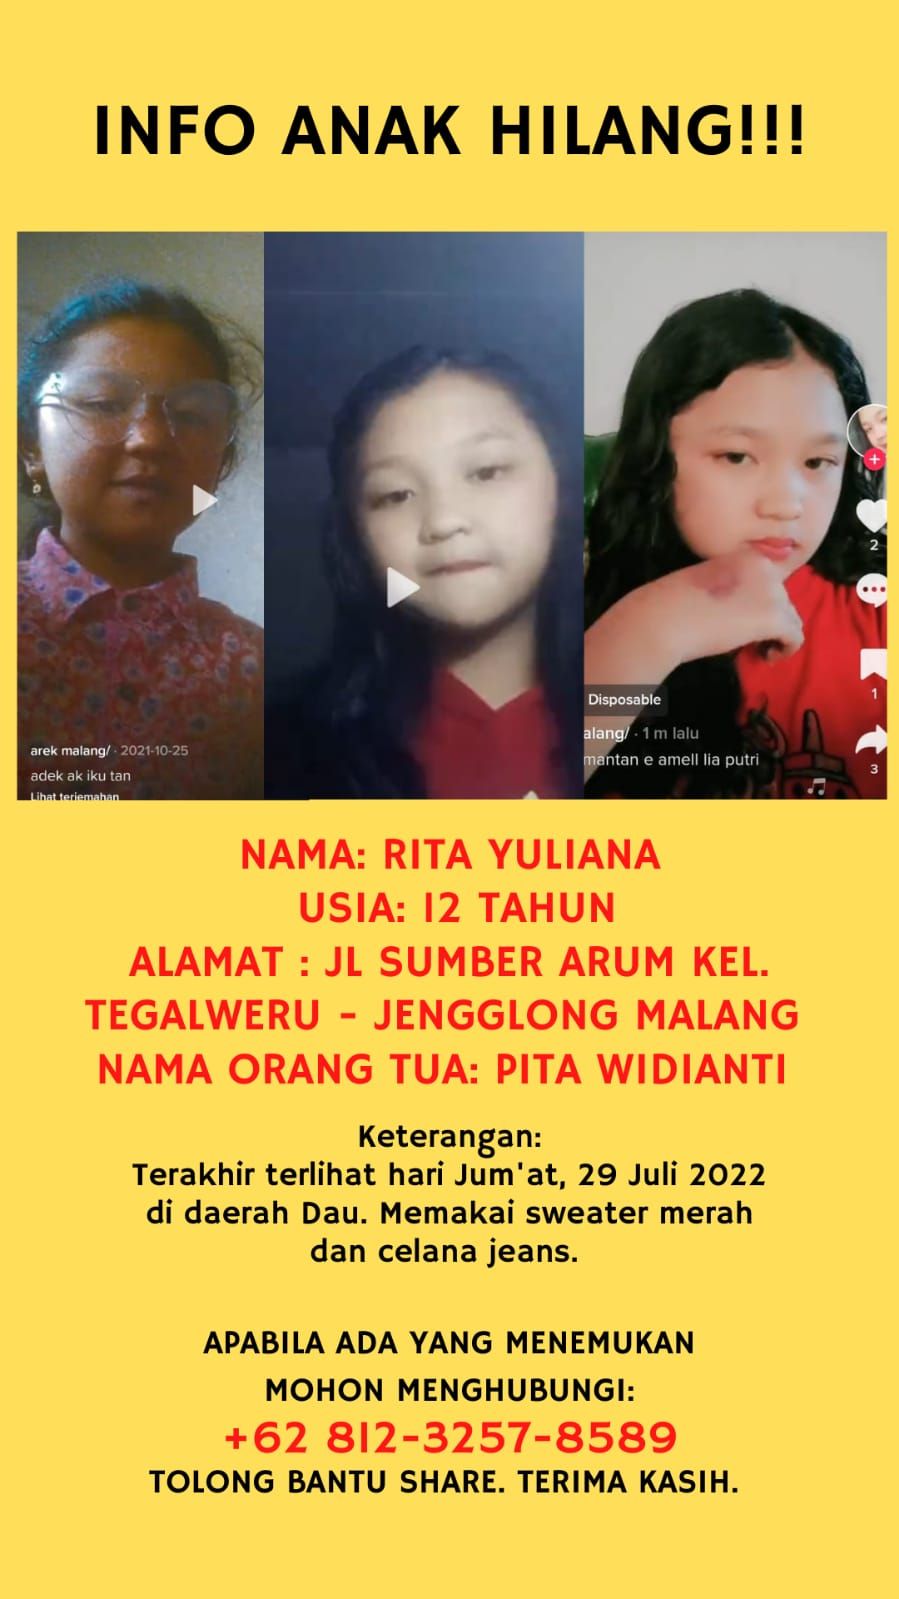 Info anak hilang bernama Rita Yuliana di daerah Malang 